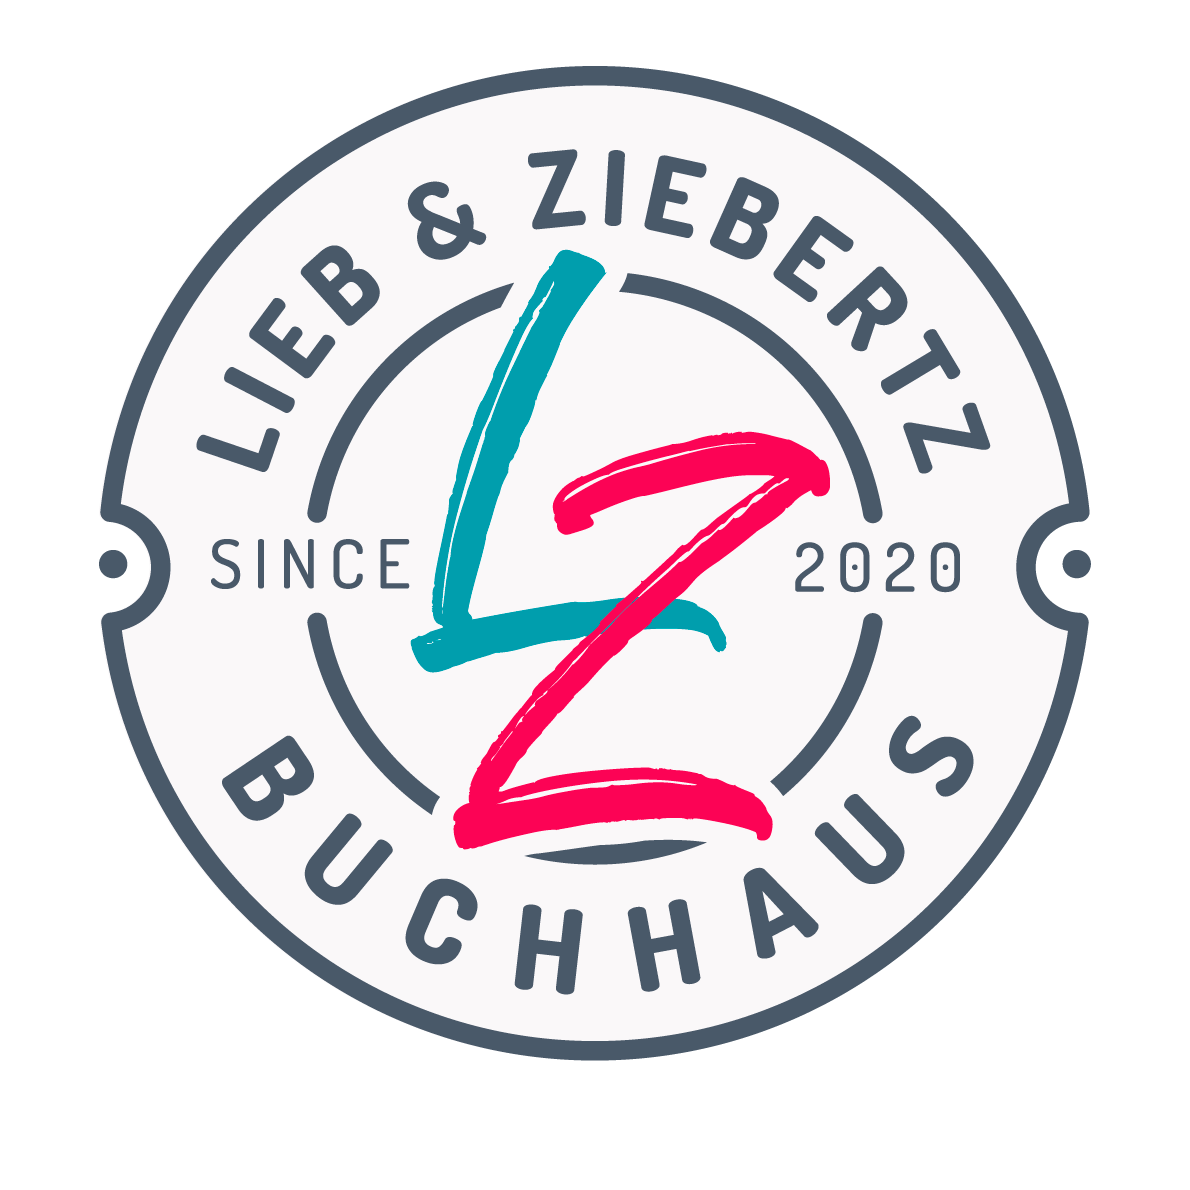 LIEB & ZIEBERTZ BUCHHAUS